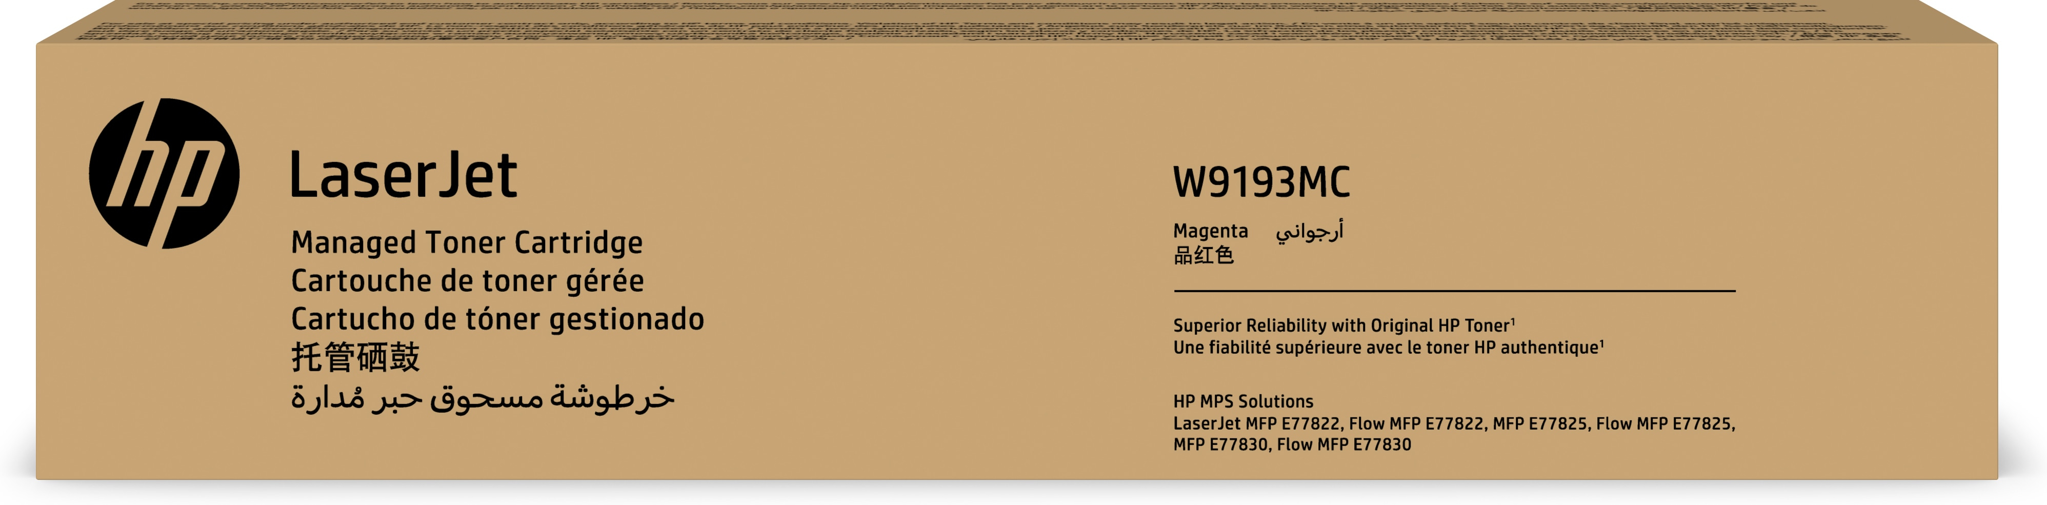 Bild von HP LaserJet W9193MC, 28000 Seiten, Magenta, 1 Stück(e)